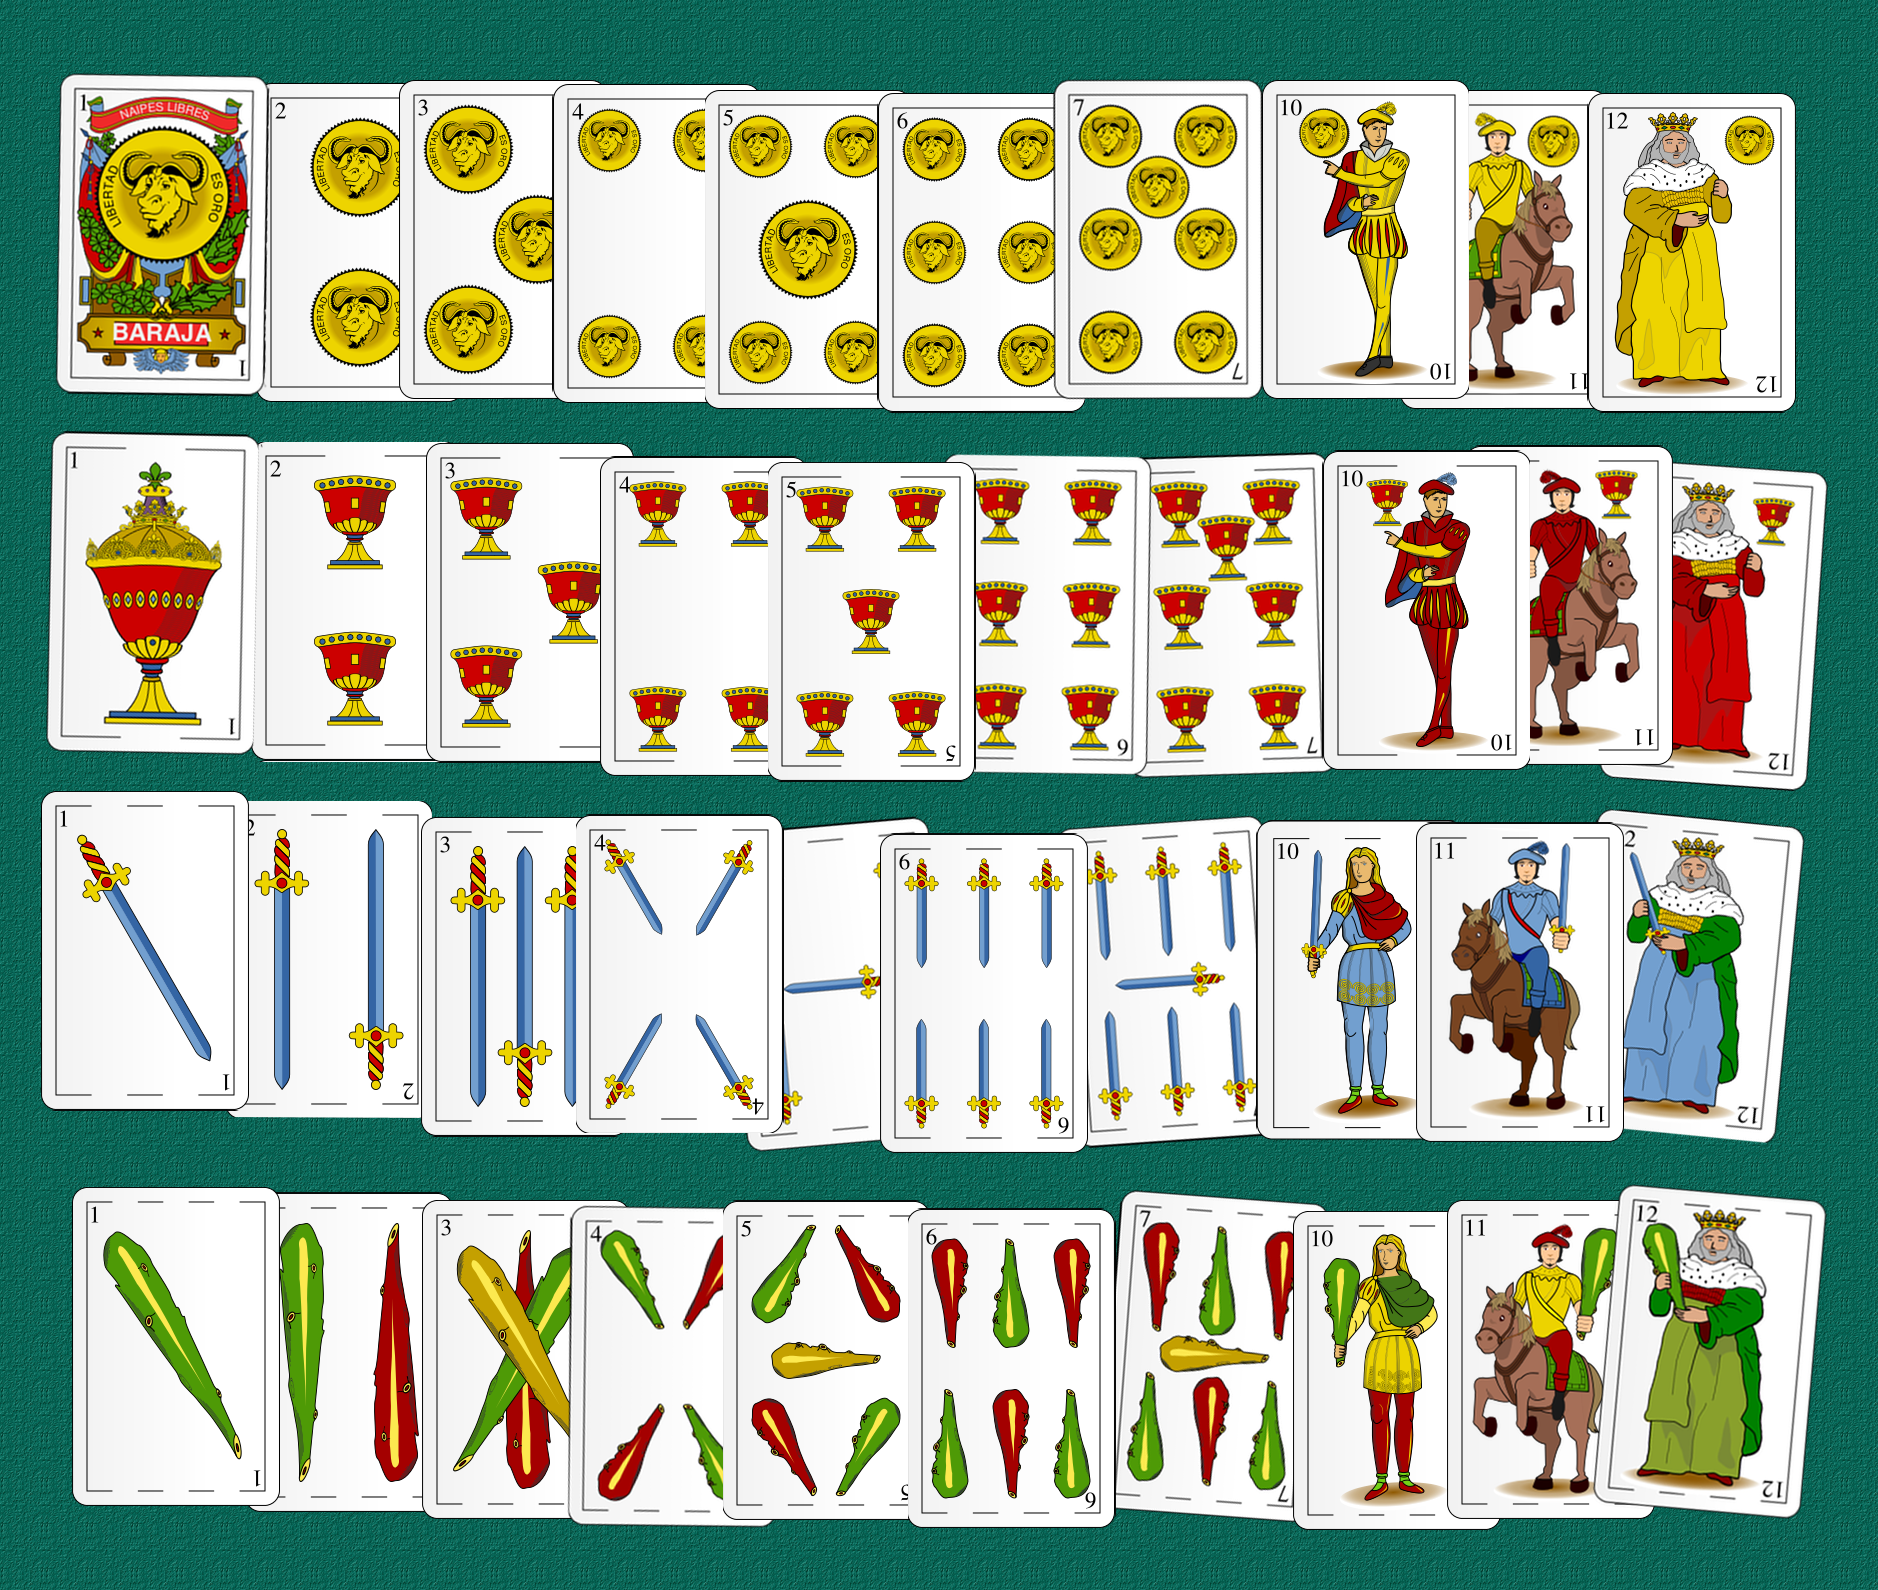 La imagen muestra las 40 cartas de una baraja española de manera ordenada